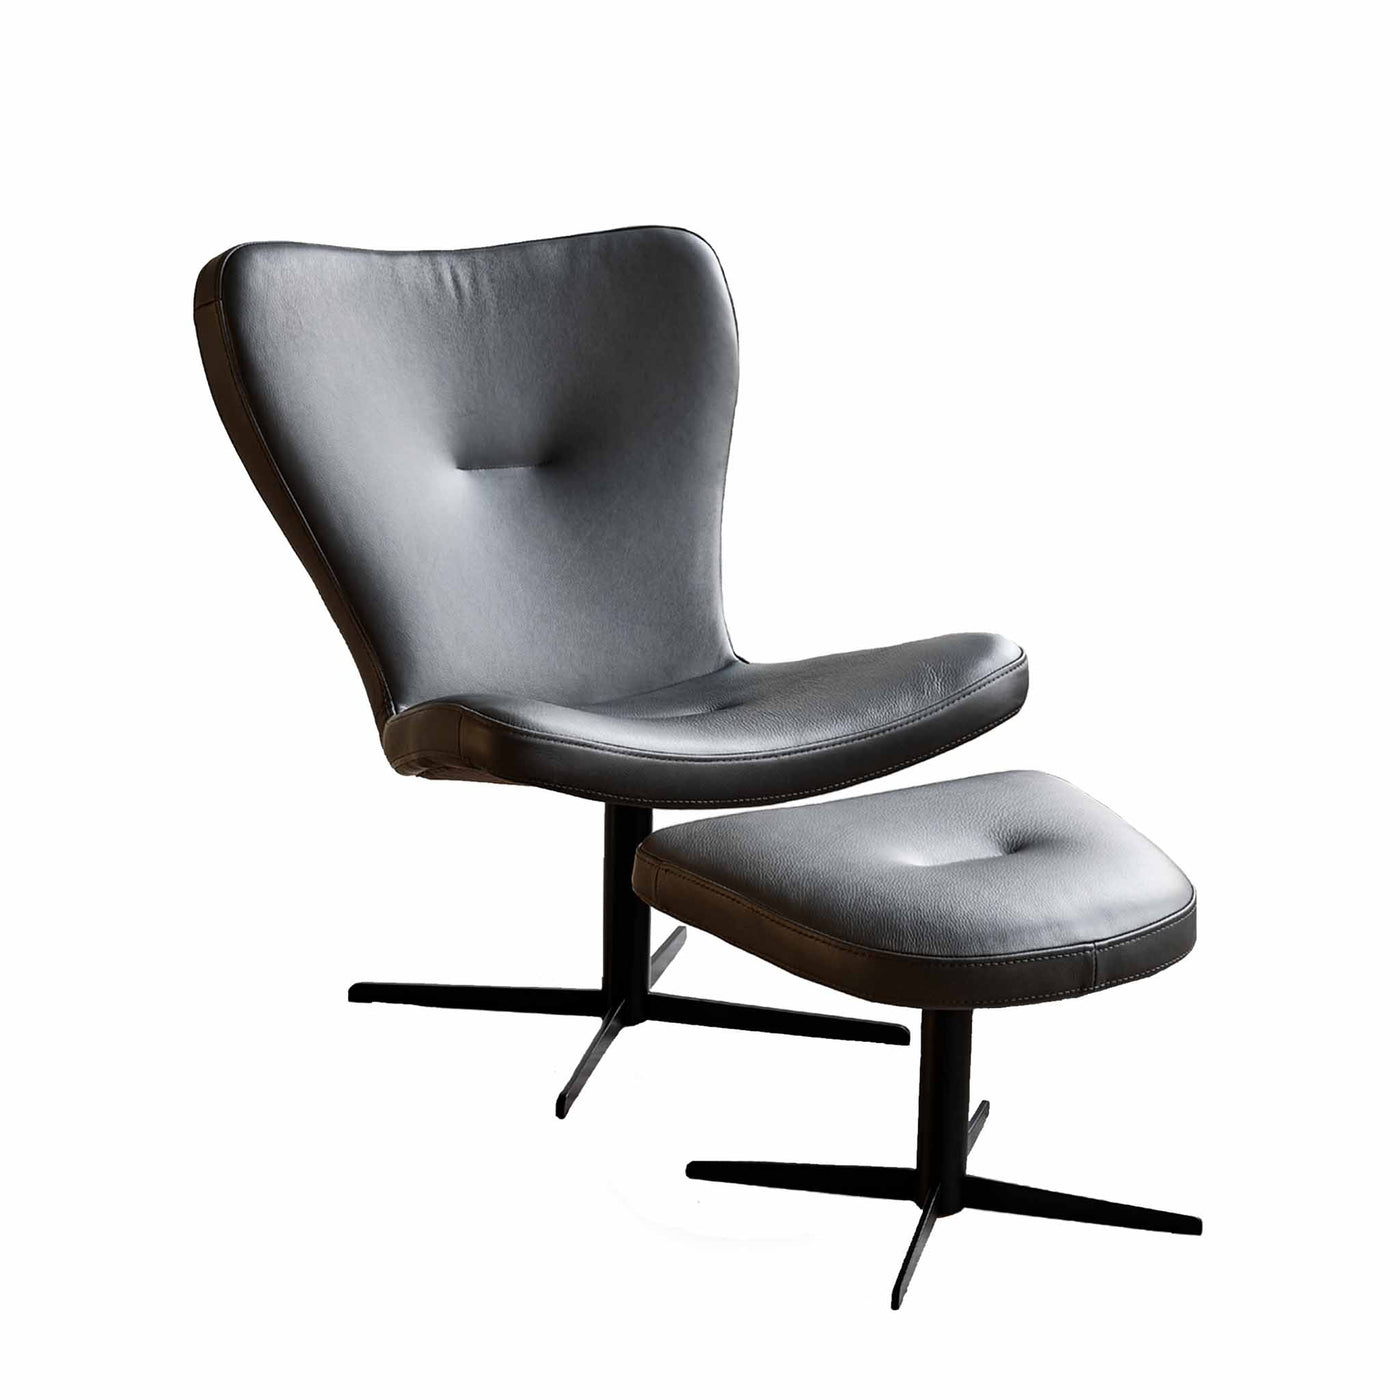 Tulip lænestol med skammel fra Top-Line i sort Viborg læder.